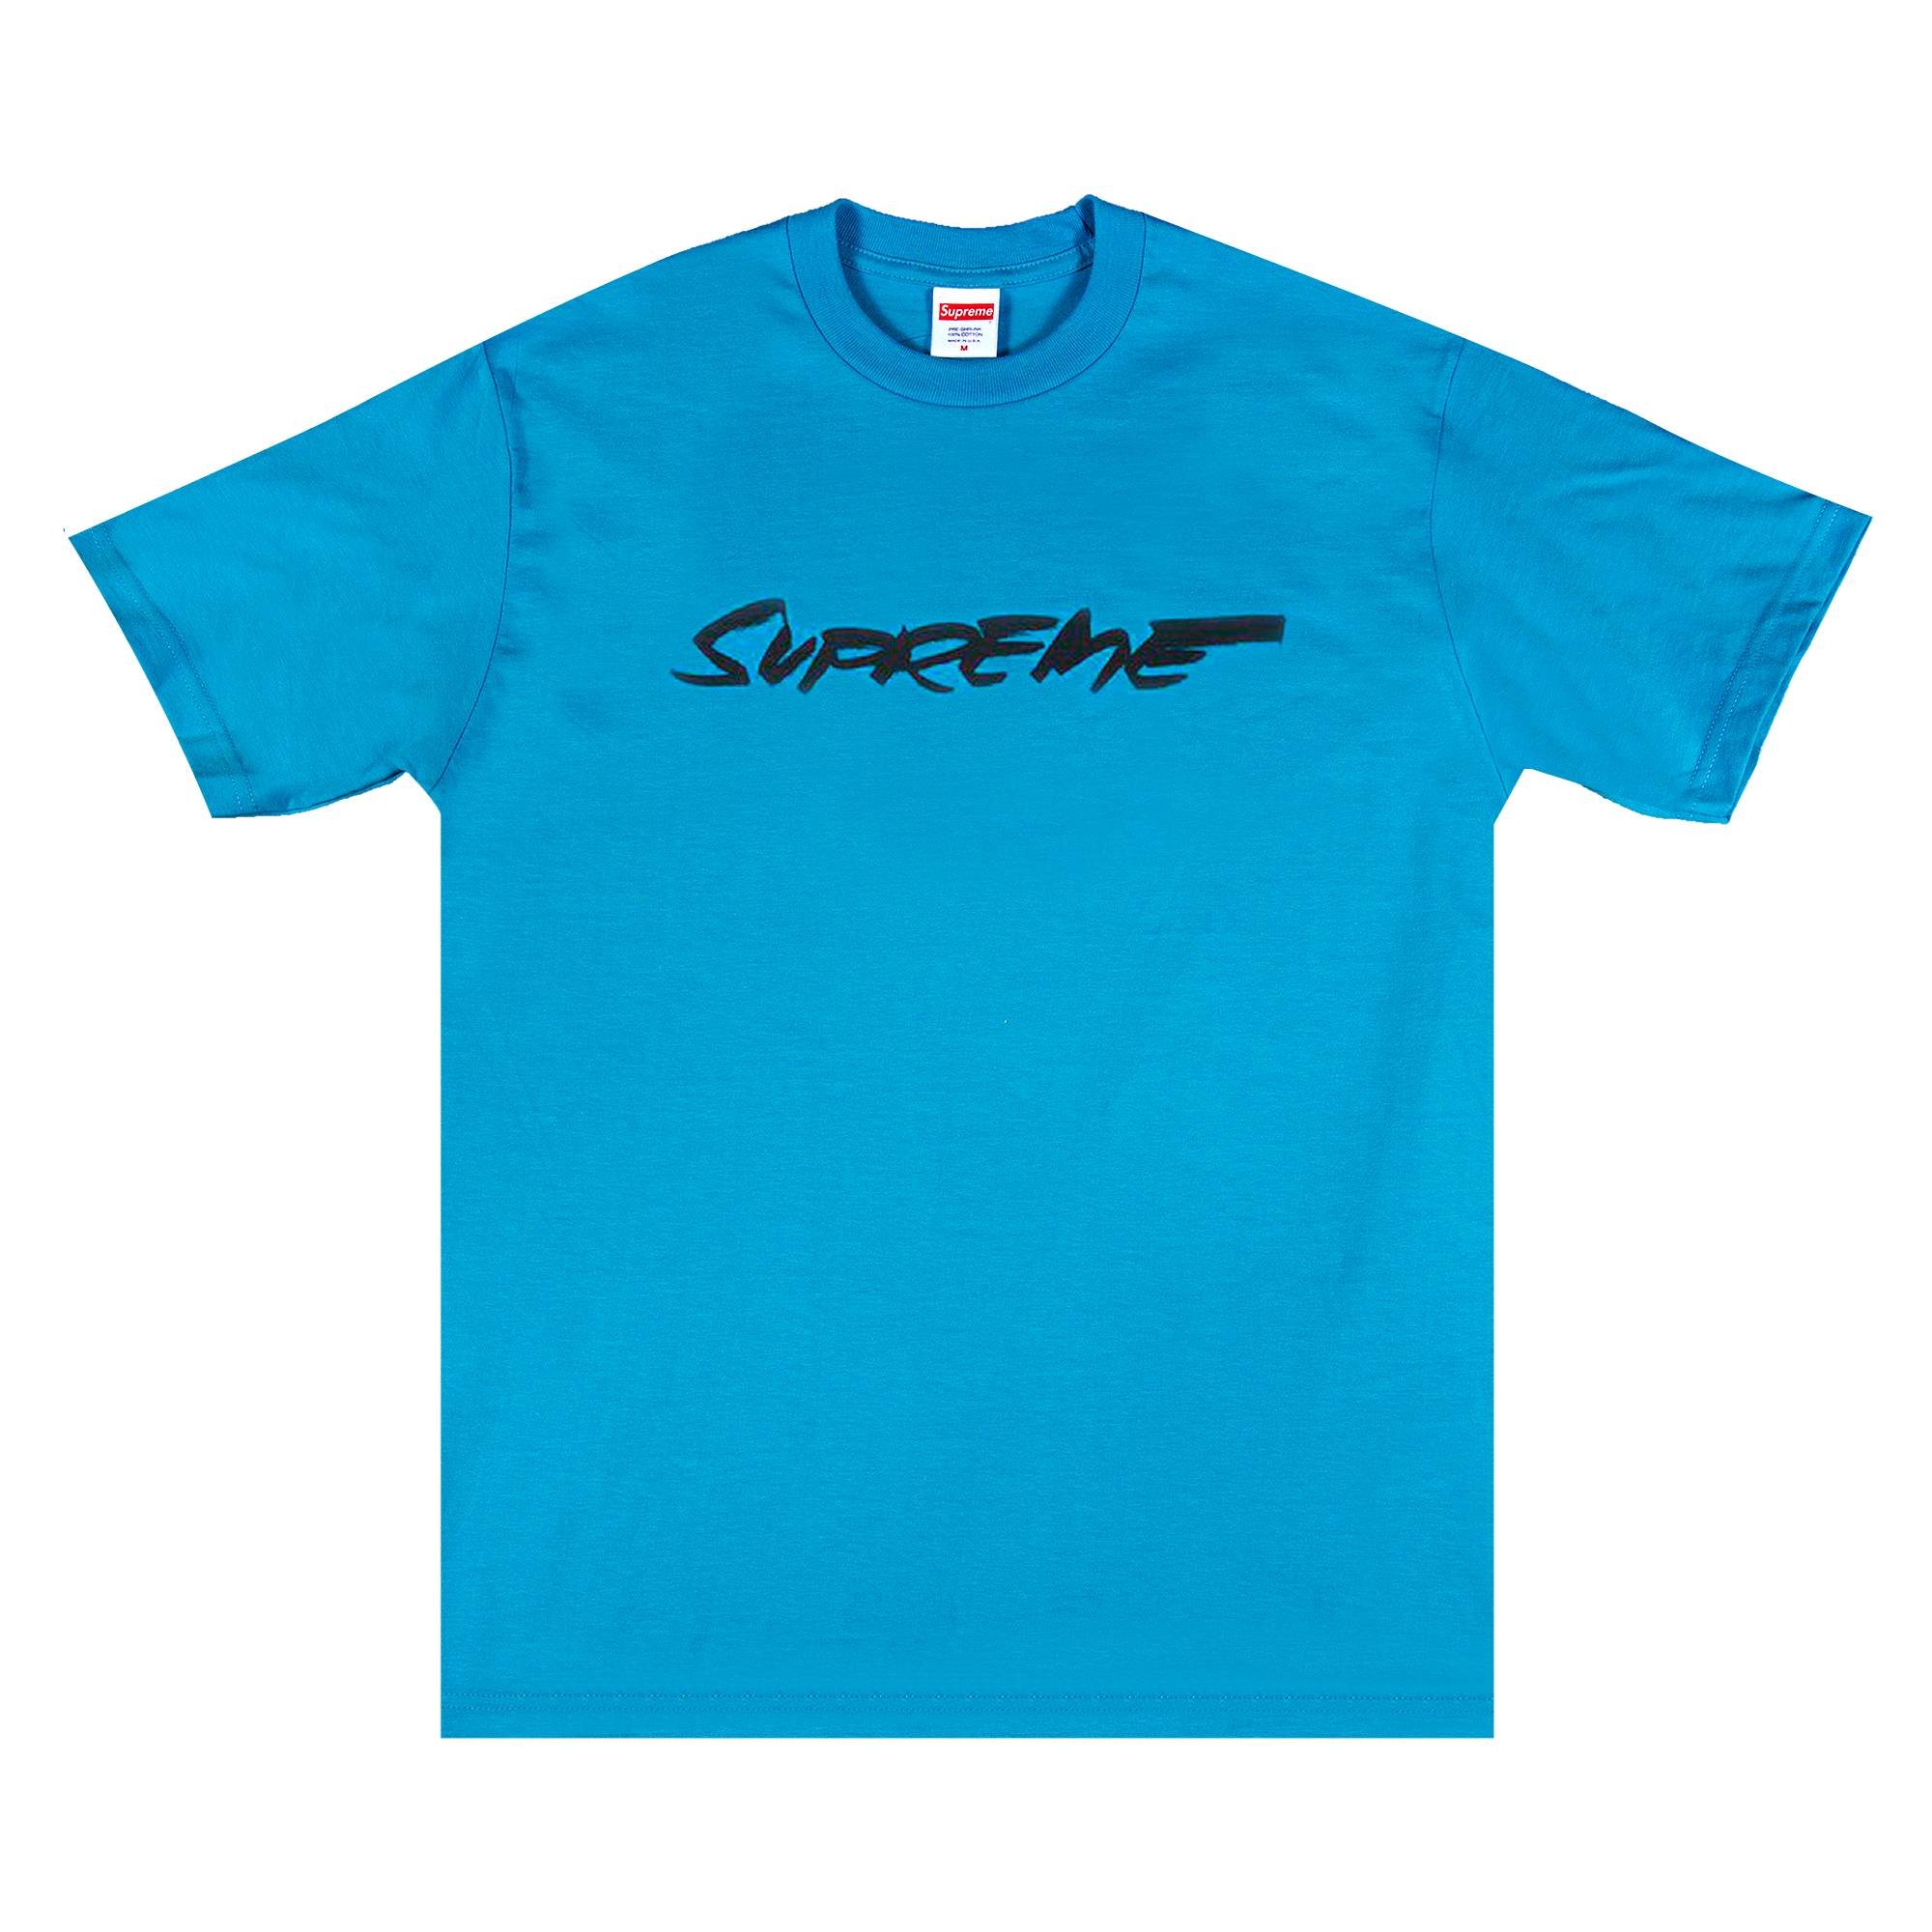 Supreme Futura Logo Tee 'Bright Blue' - Supreme - FW20T18 BRIGHT BLUE ...